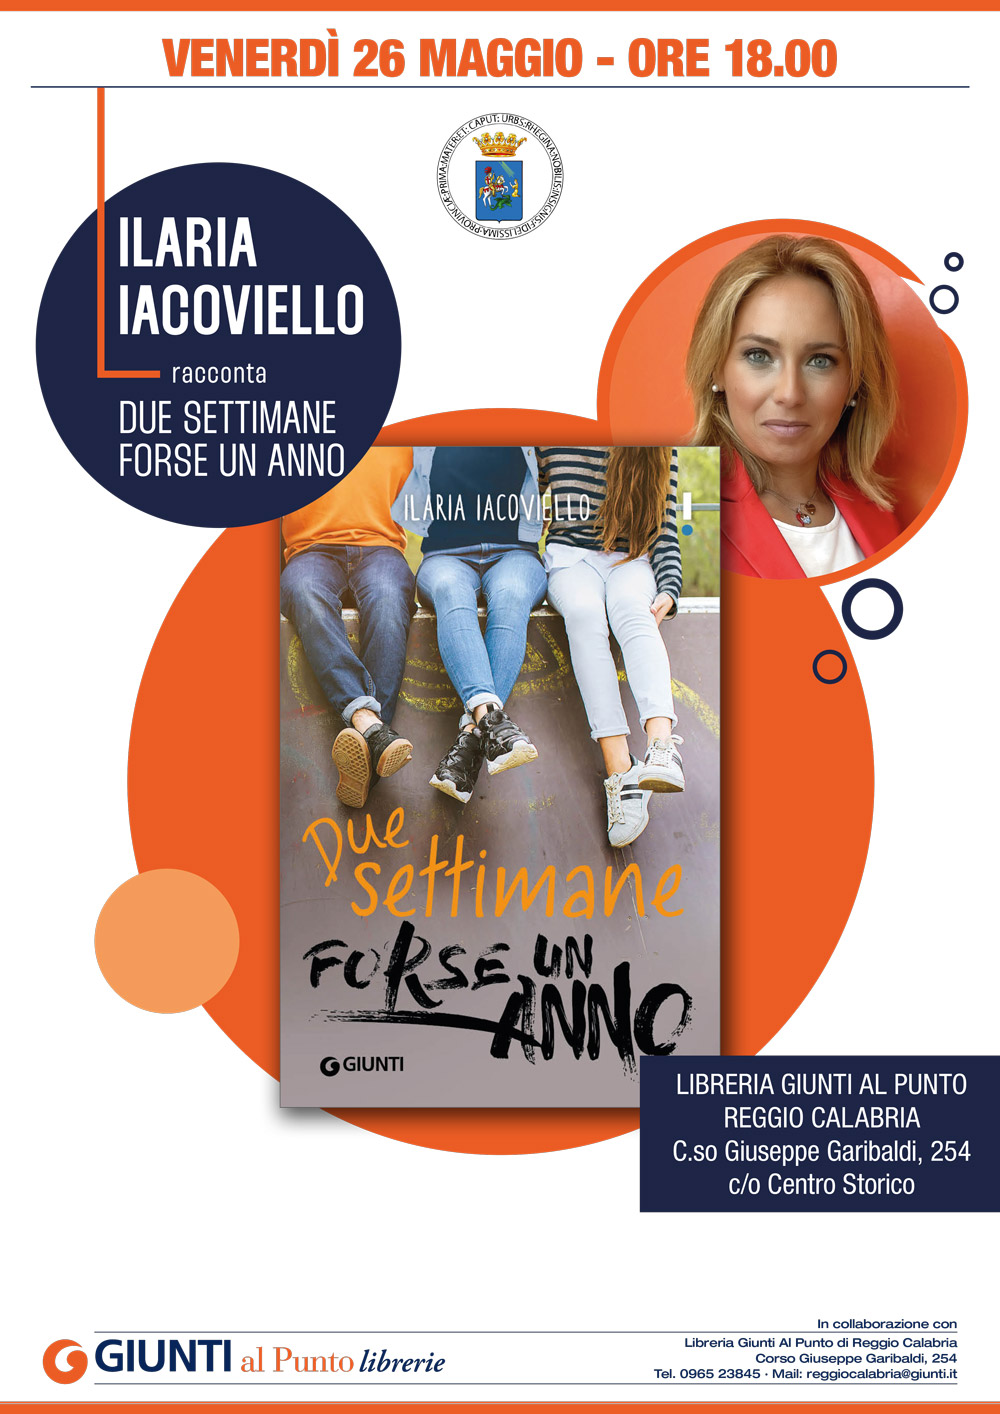 Ilaria Iacoviello racconta "Due settimane forse un anno". Appuntamento a Reggio Calabria